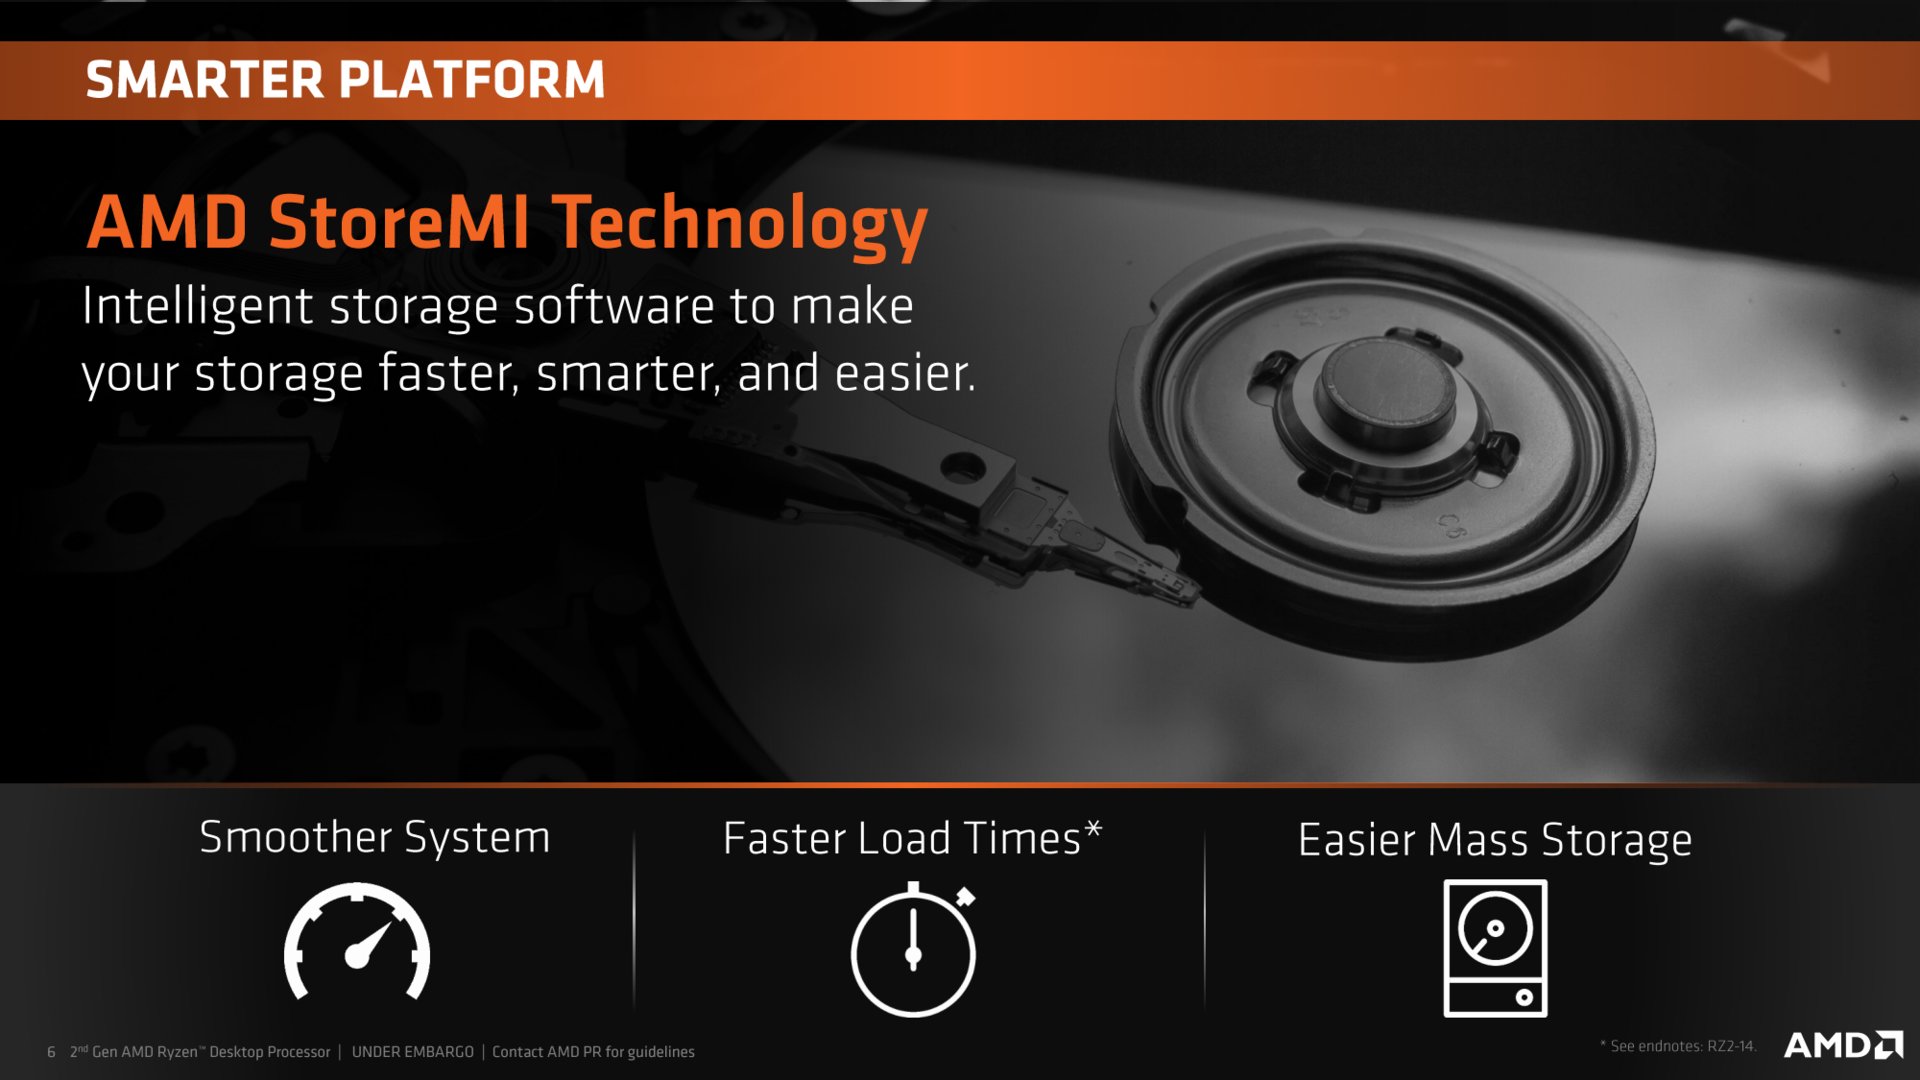 AMD StoreMI Technology